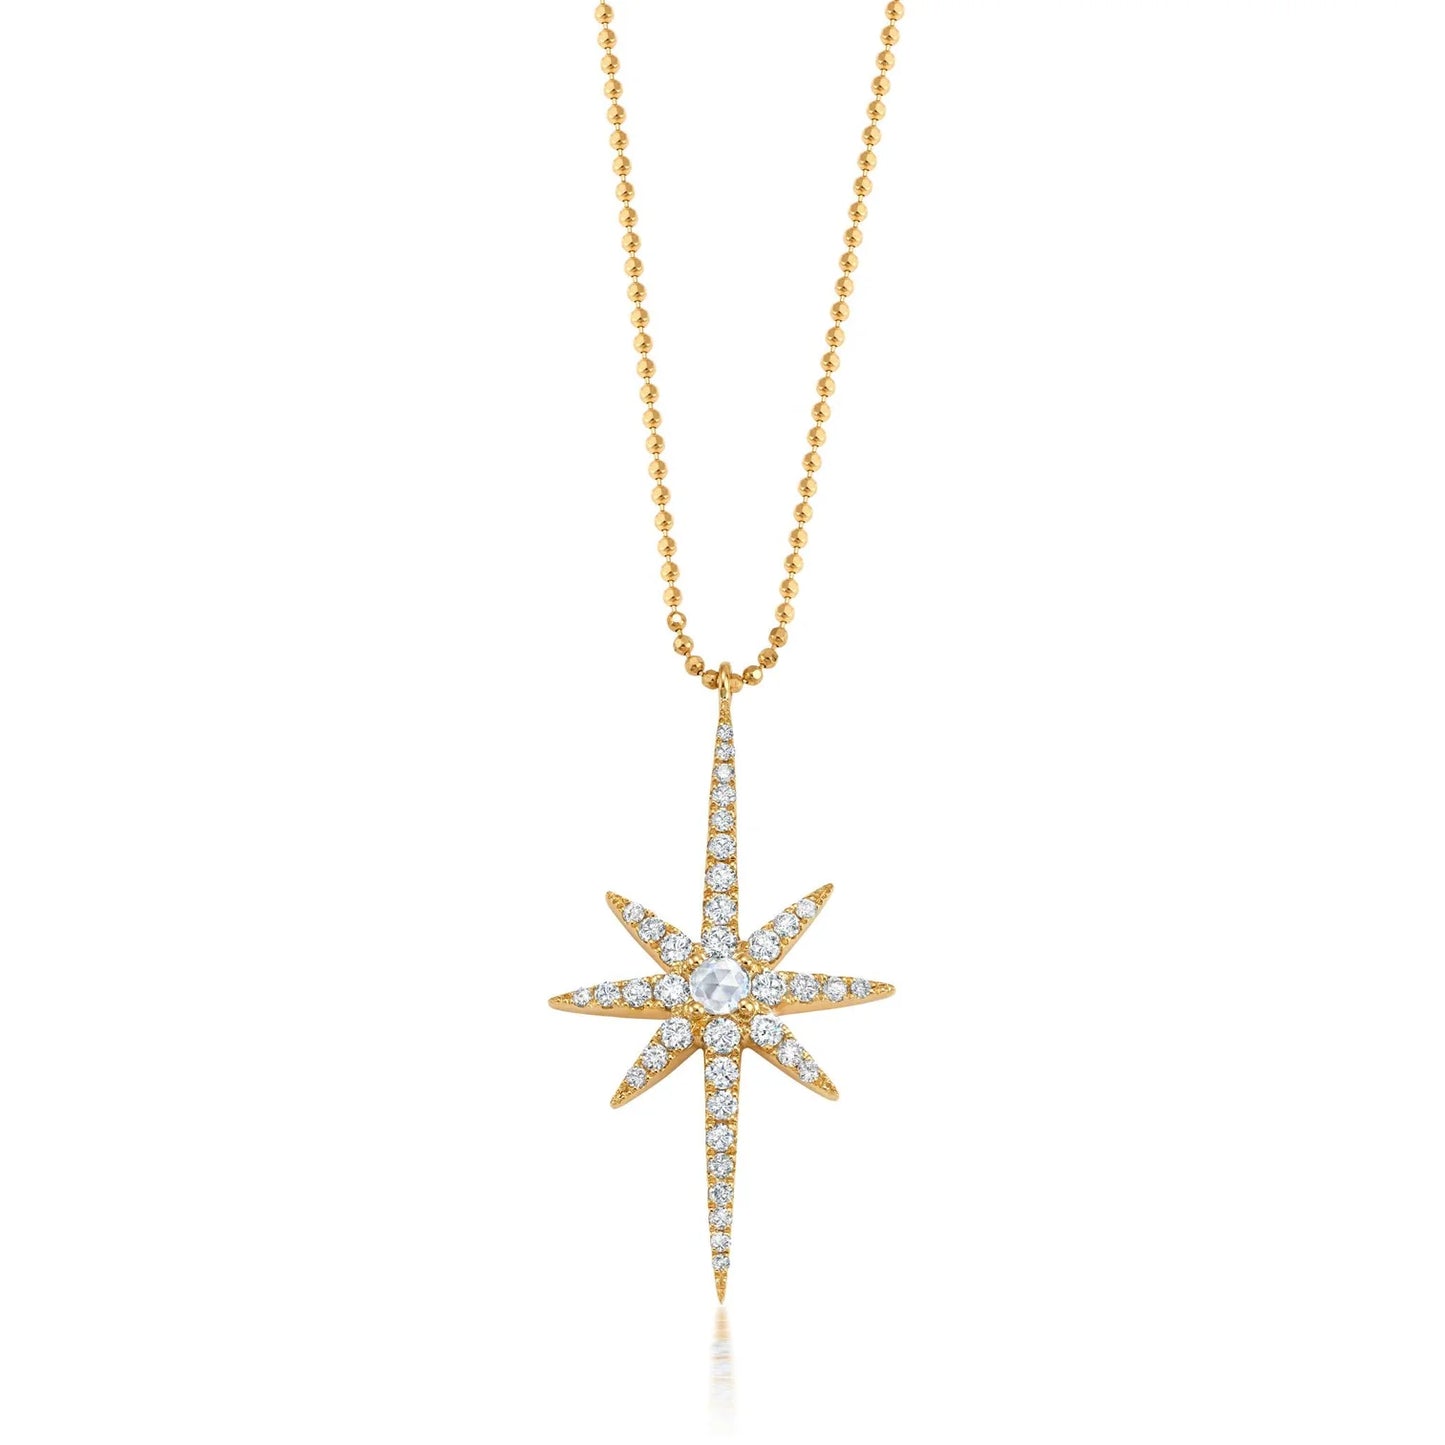 Starburst Necklace